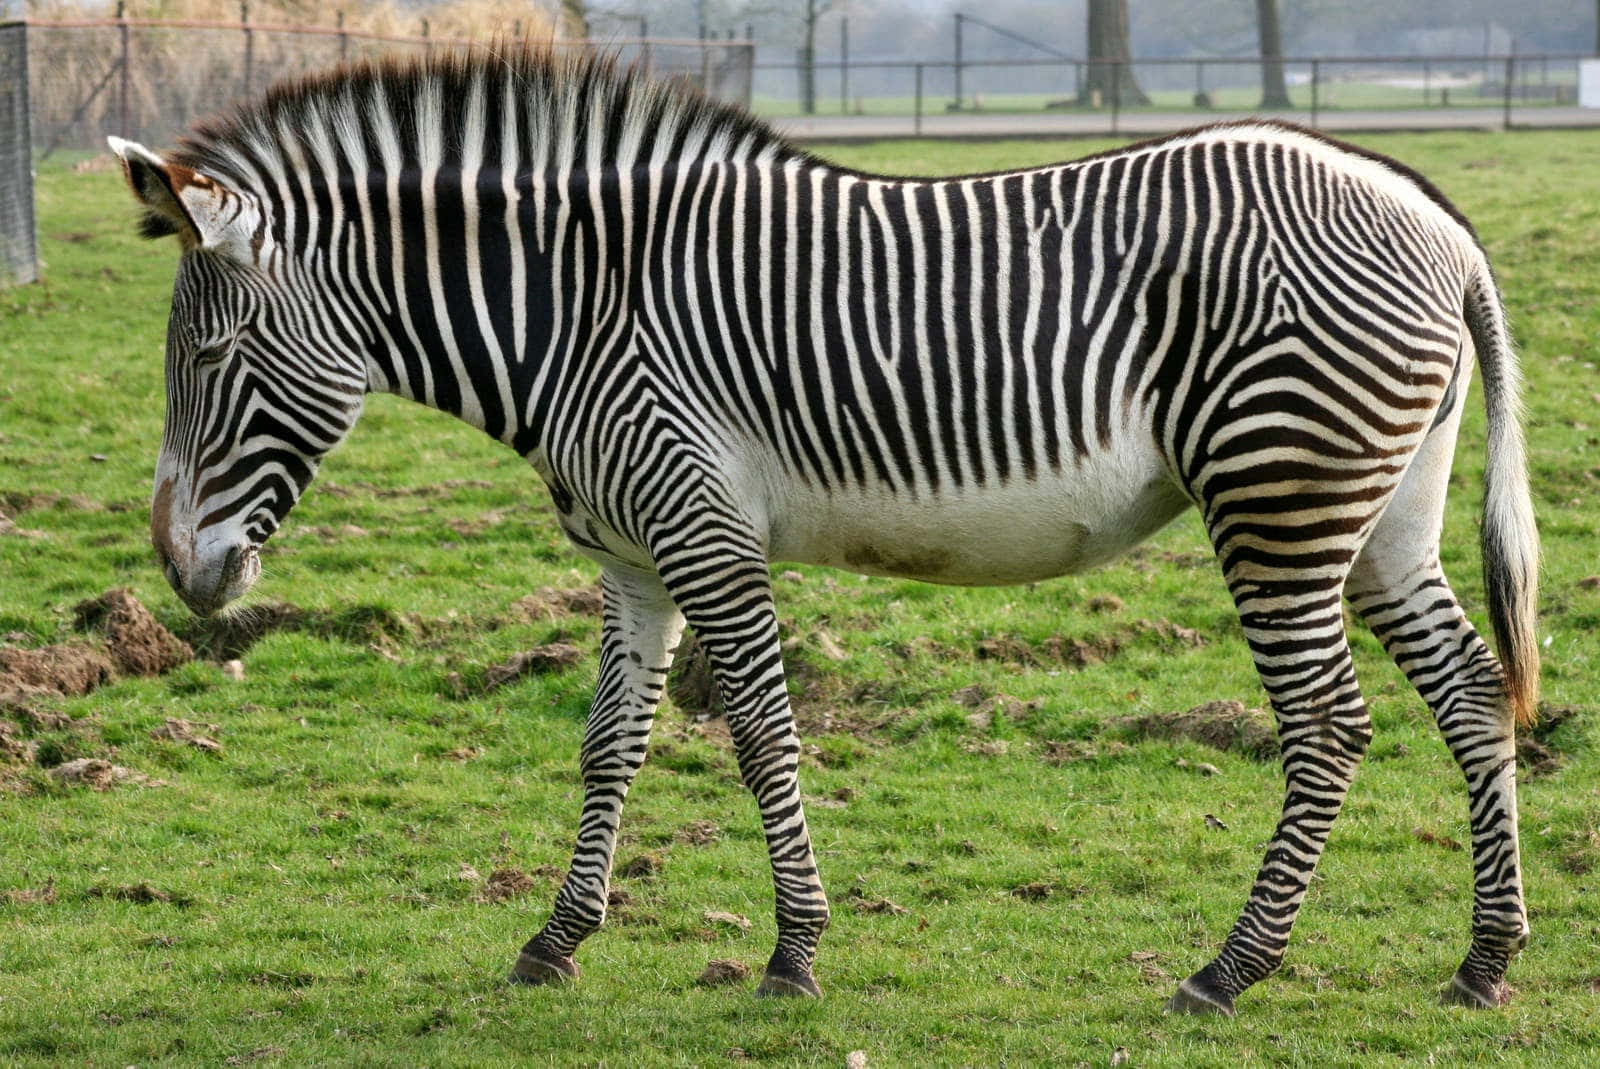 A Zebra In A Field